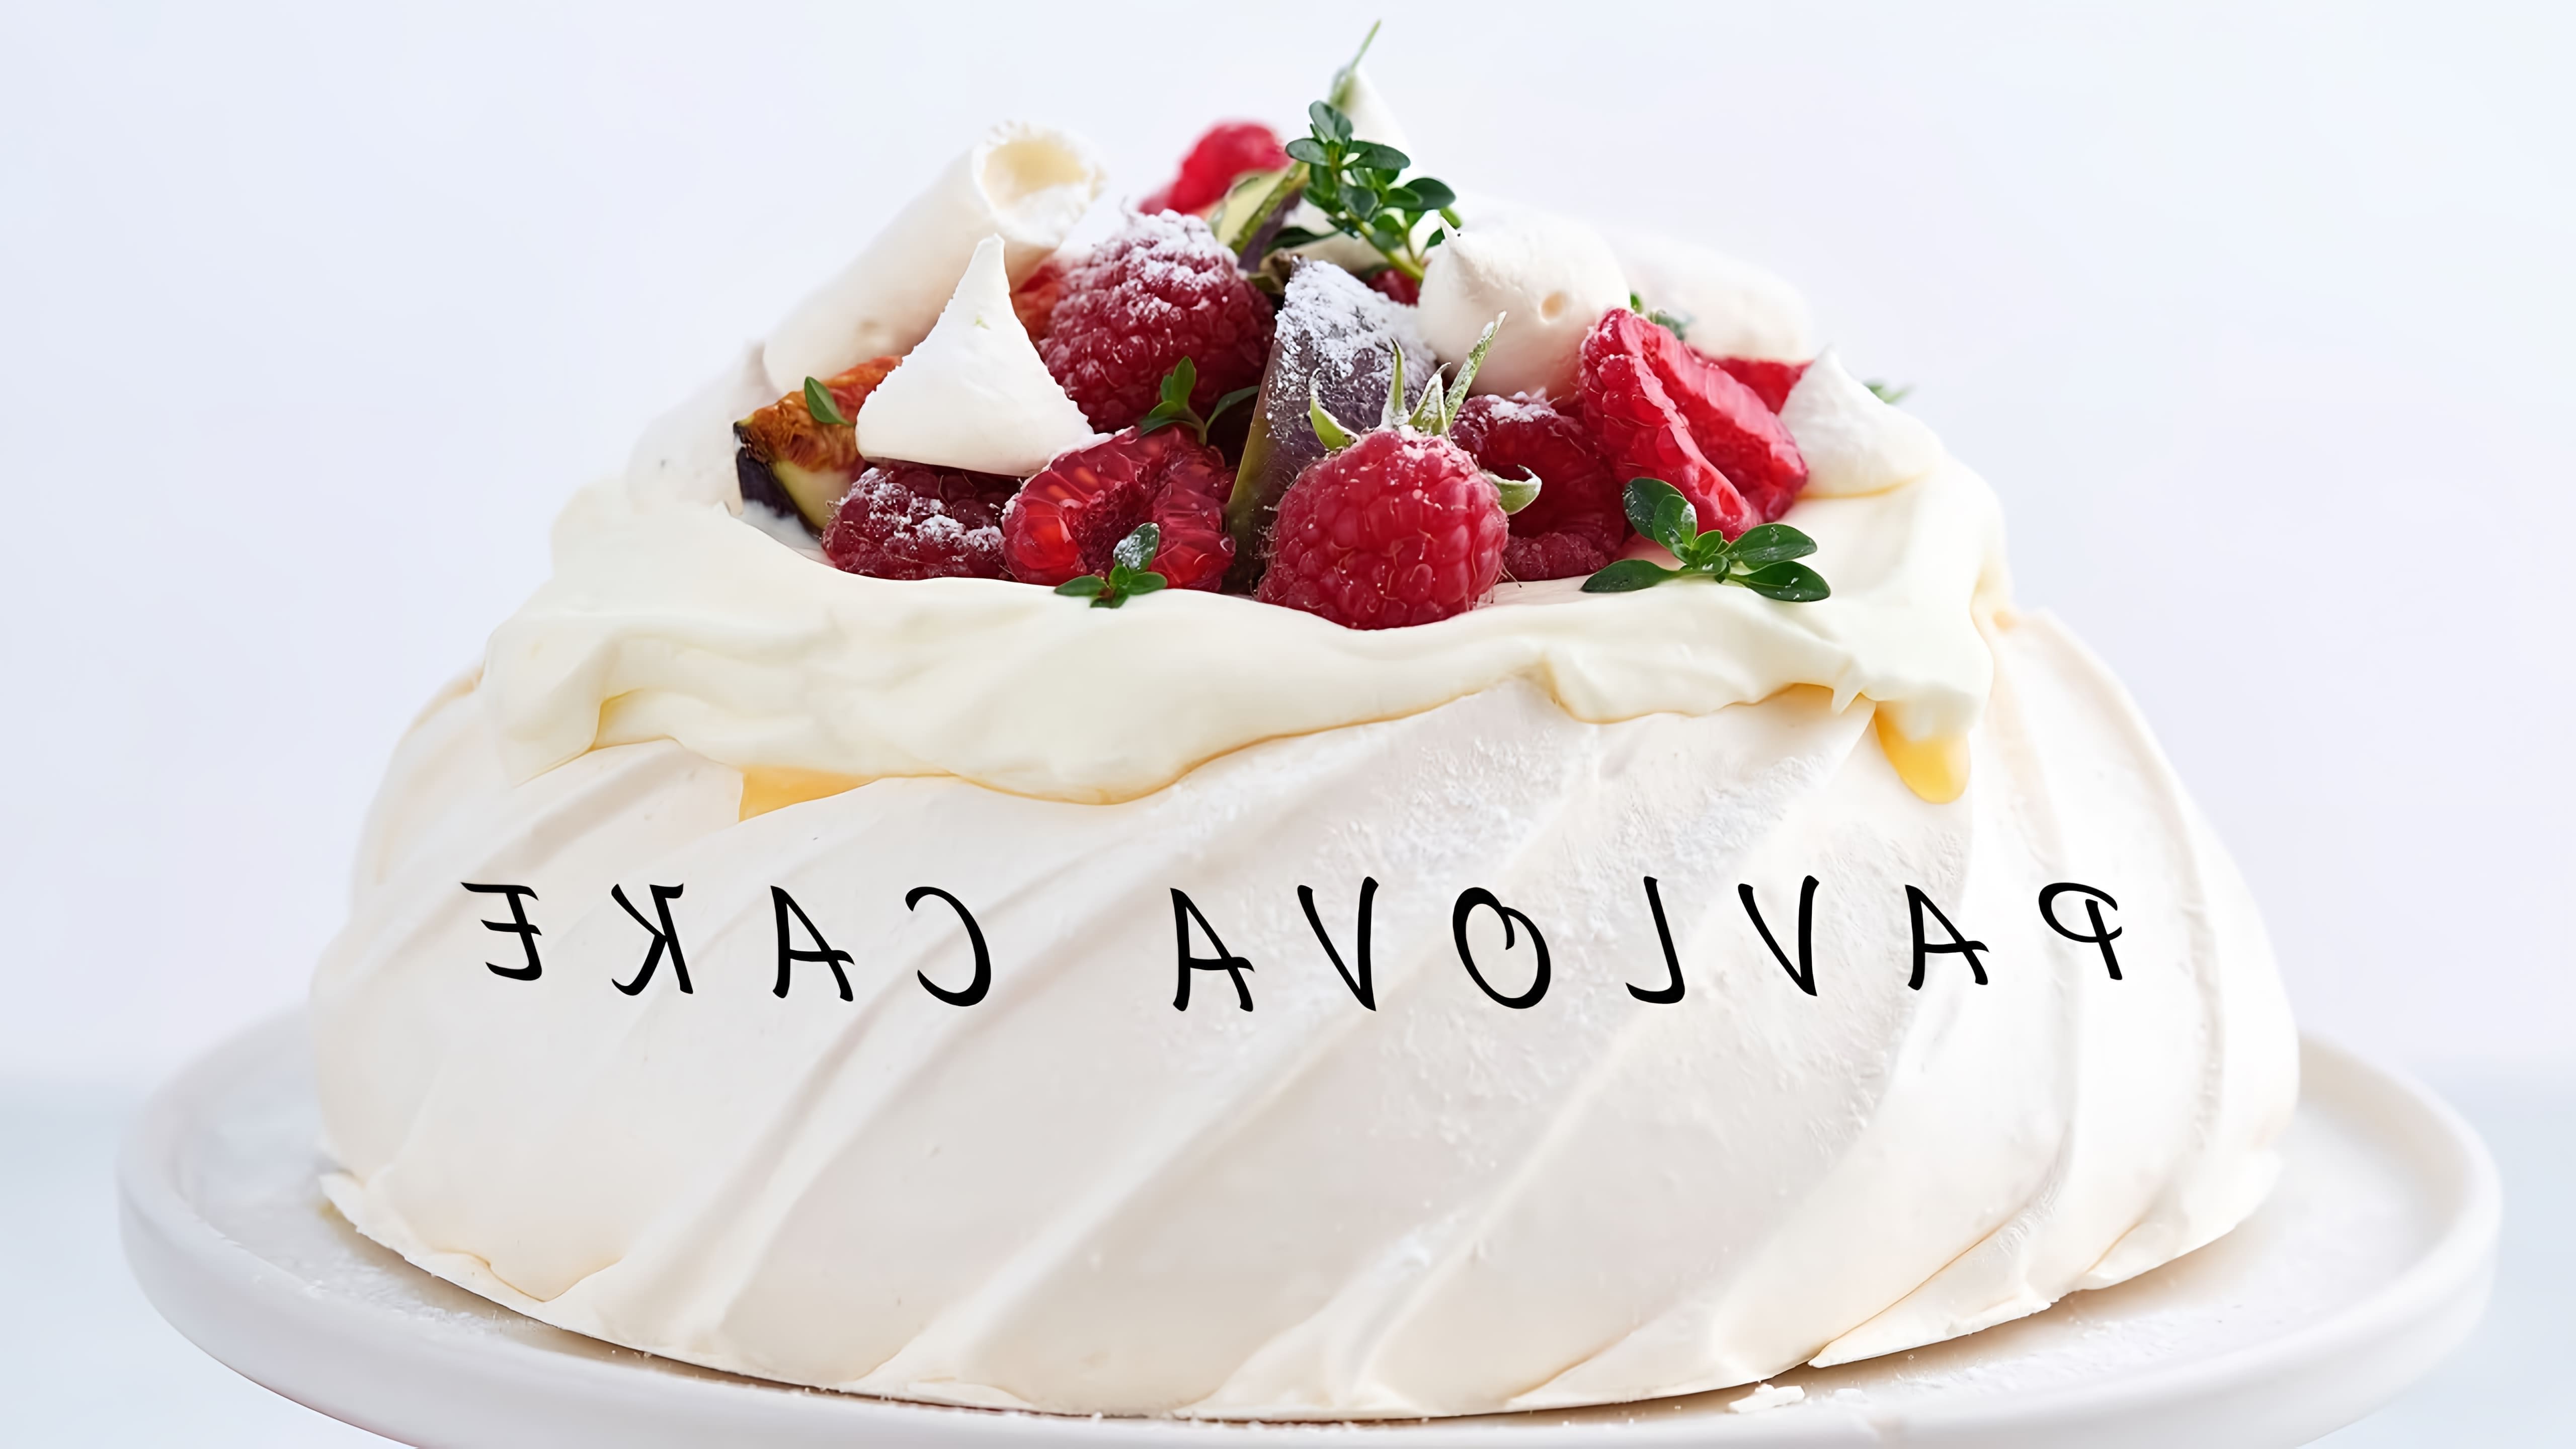 В этом видео демонстрируется процесс приготовления десерта под названием "Торт Павлова"